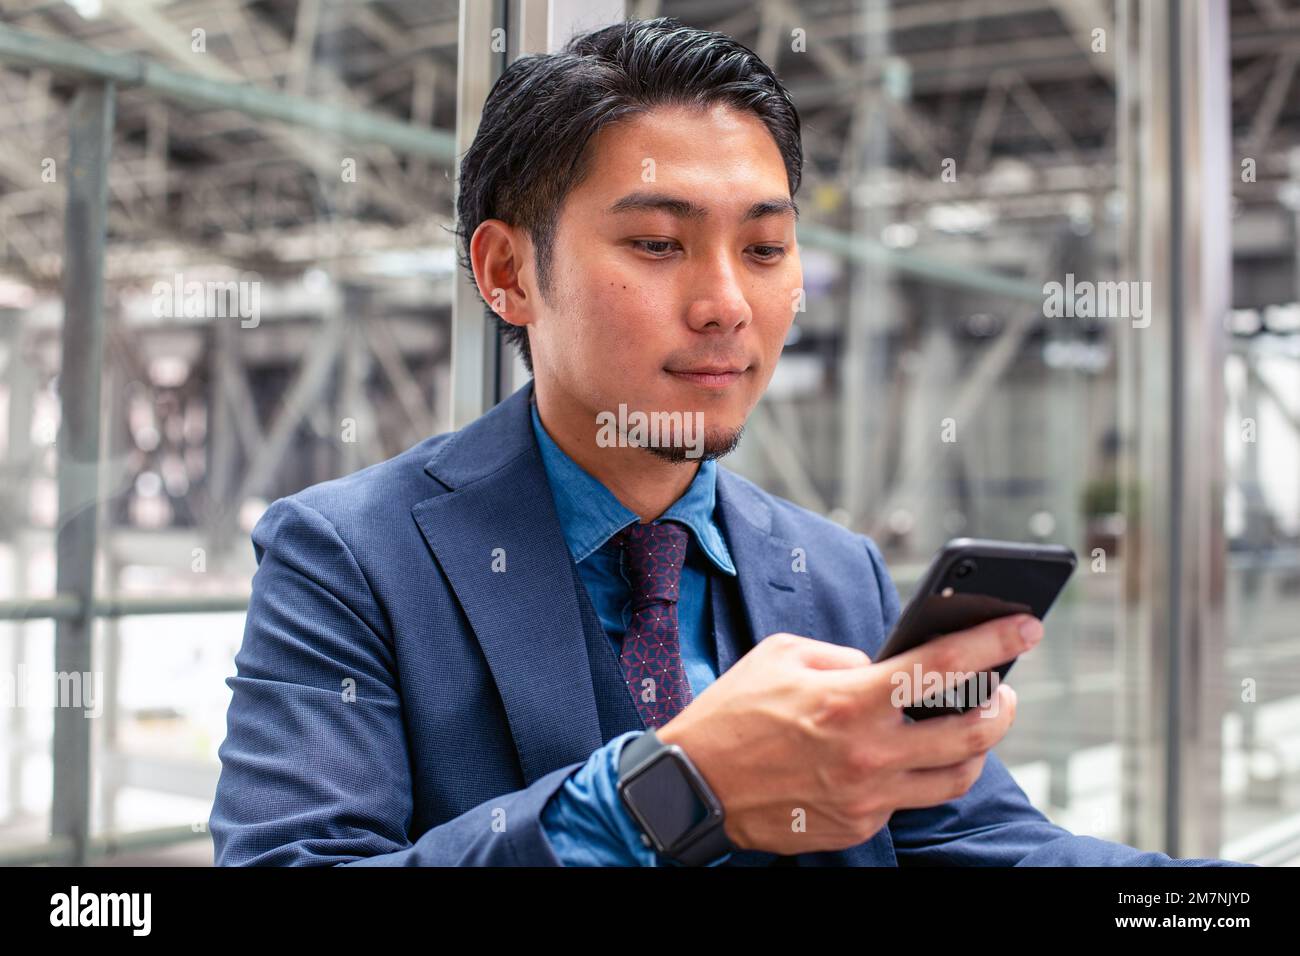 Un giovane uomo d'affari in una tuta blu in una città, guardando lo schermo del suo telefono cellulare, testando o leggendo un messaggio. Foto Stock